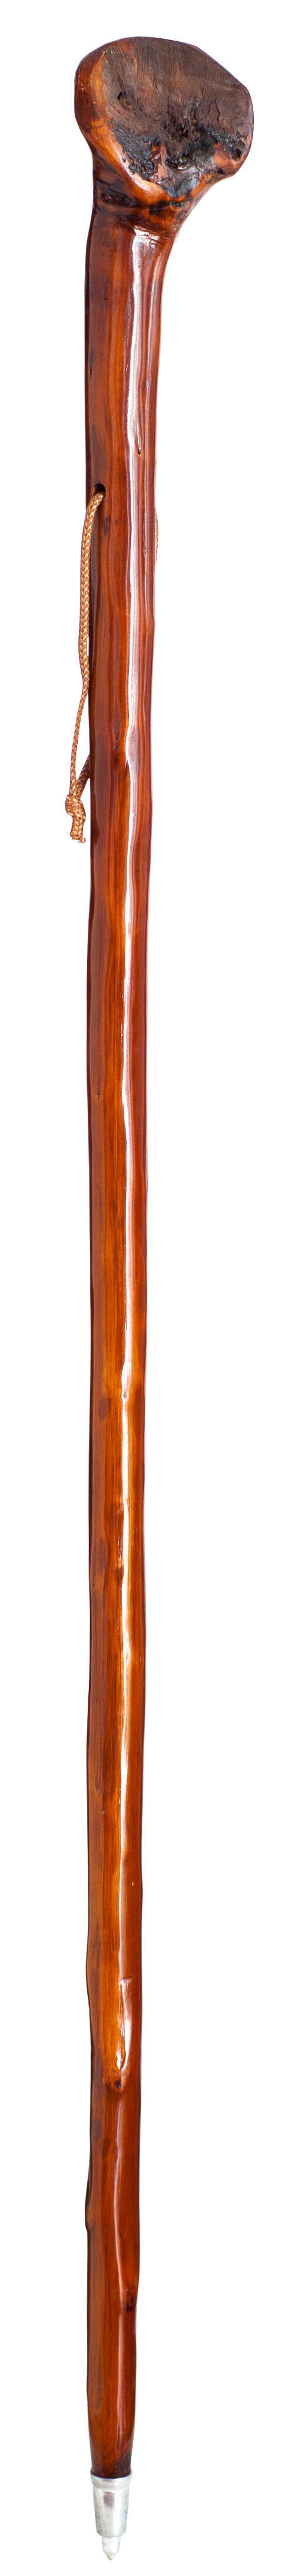  Bastón de madera, bastón unisex de madera natural con